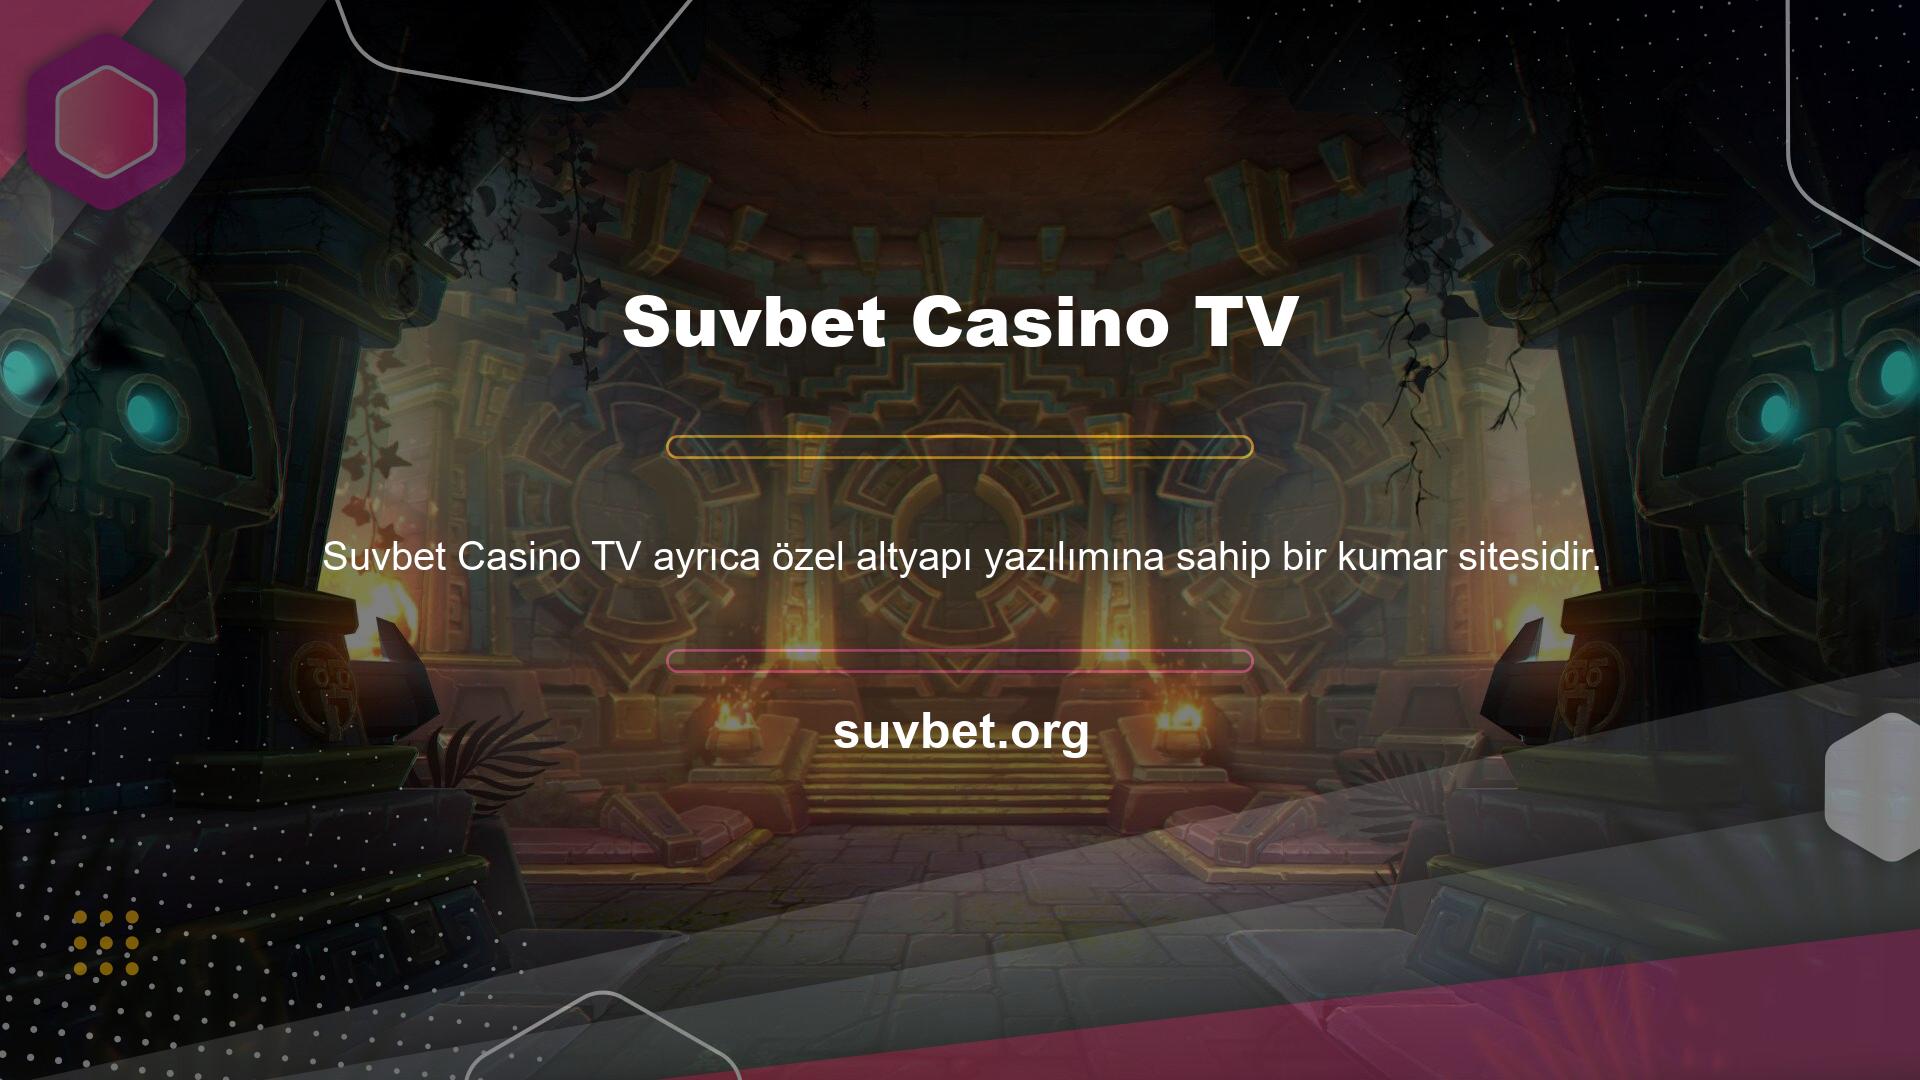 Suvbet Casino TV üzerinden Suvbet Casino bahis sitesi giriş adresine giriş yapabilir ve bahis yaparken maç izleyebilirsiniz